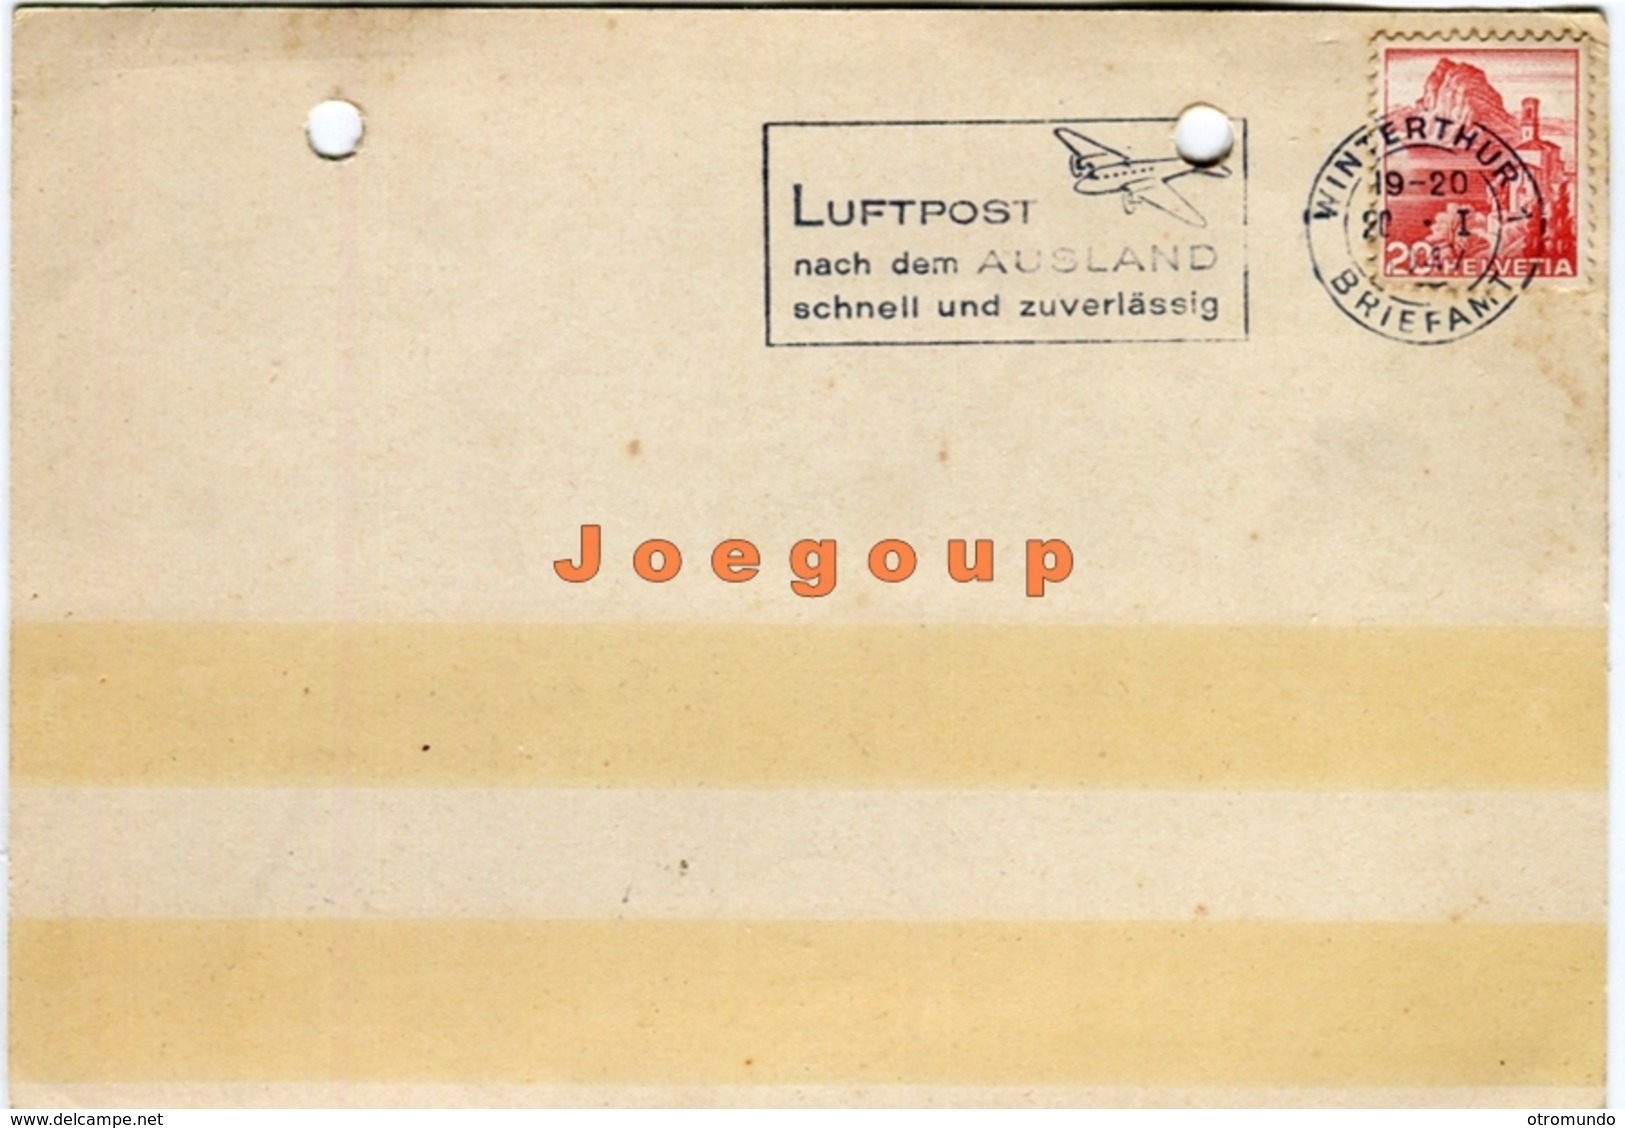 Postkarte Luftpost Gelatinefabrik Winterhur Schweiz Helvetia 1947 Quilmes Argentina Poststempel - Oblitérés